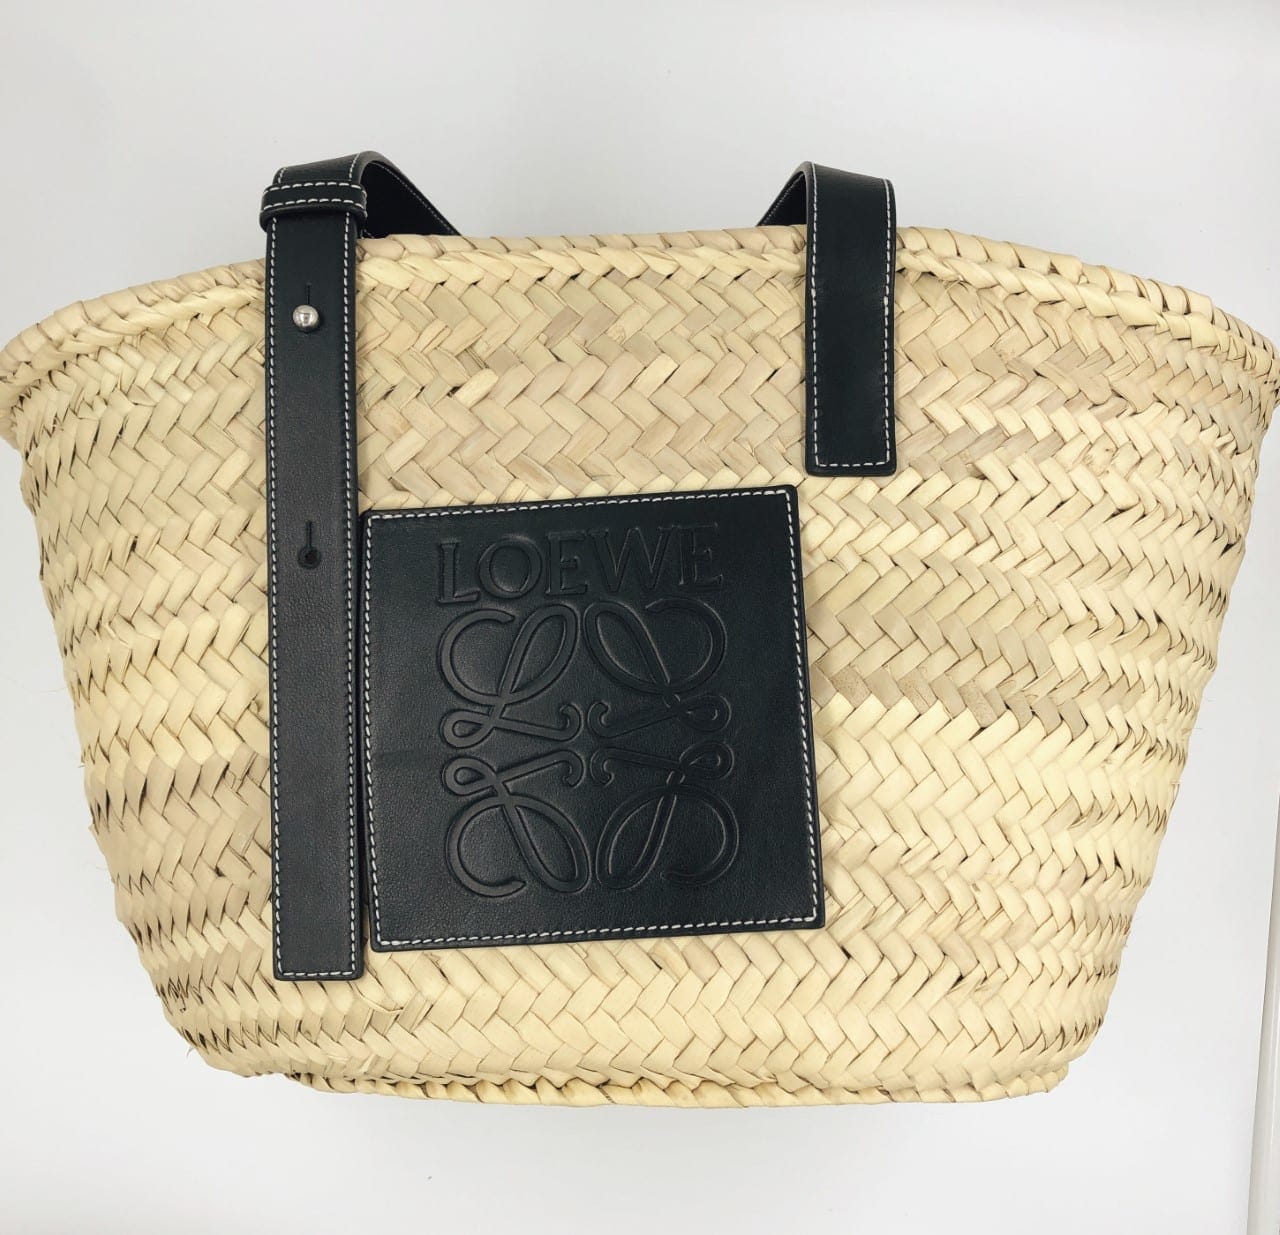 Loewe Basket Bag Size Medium